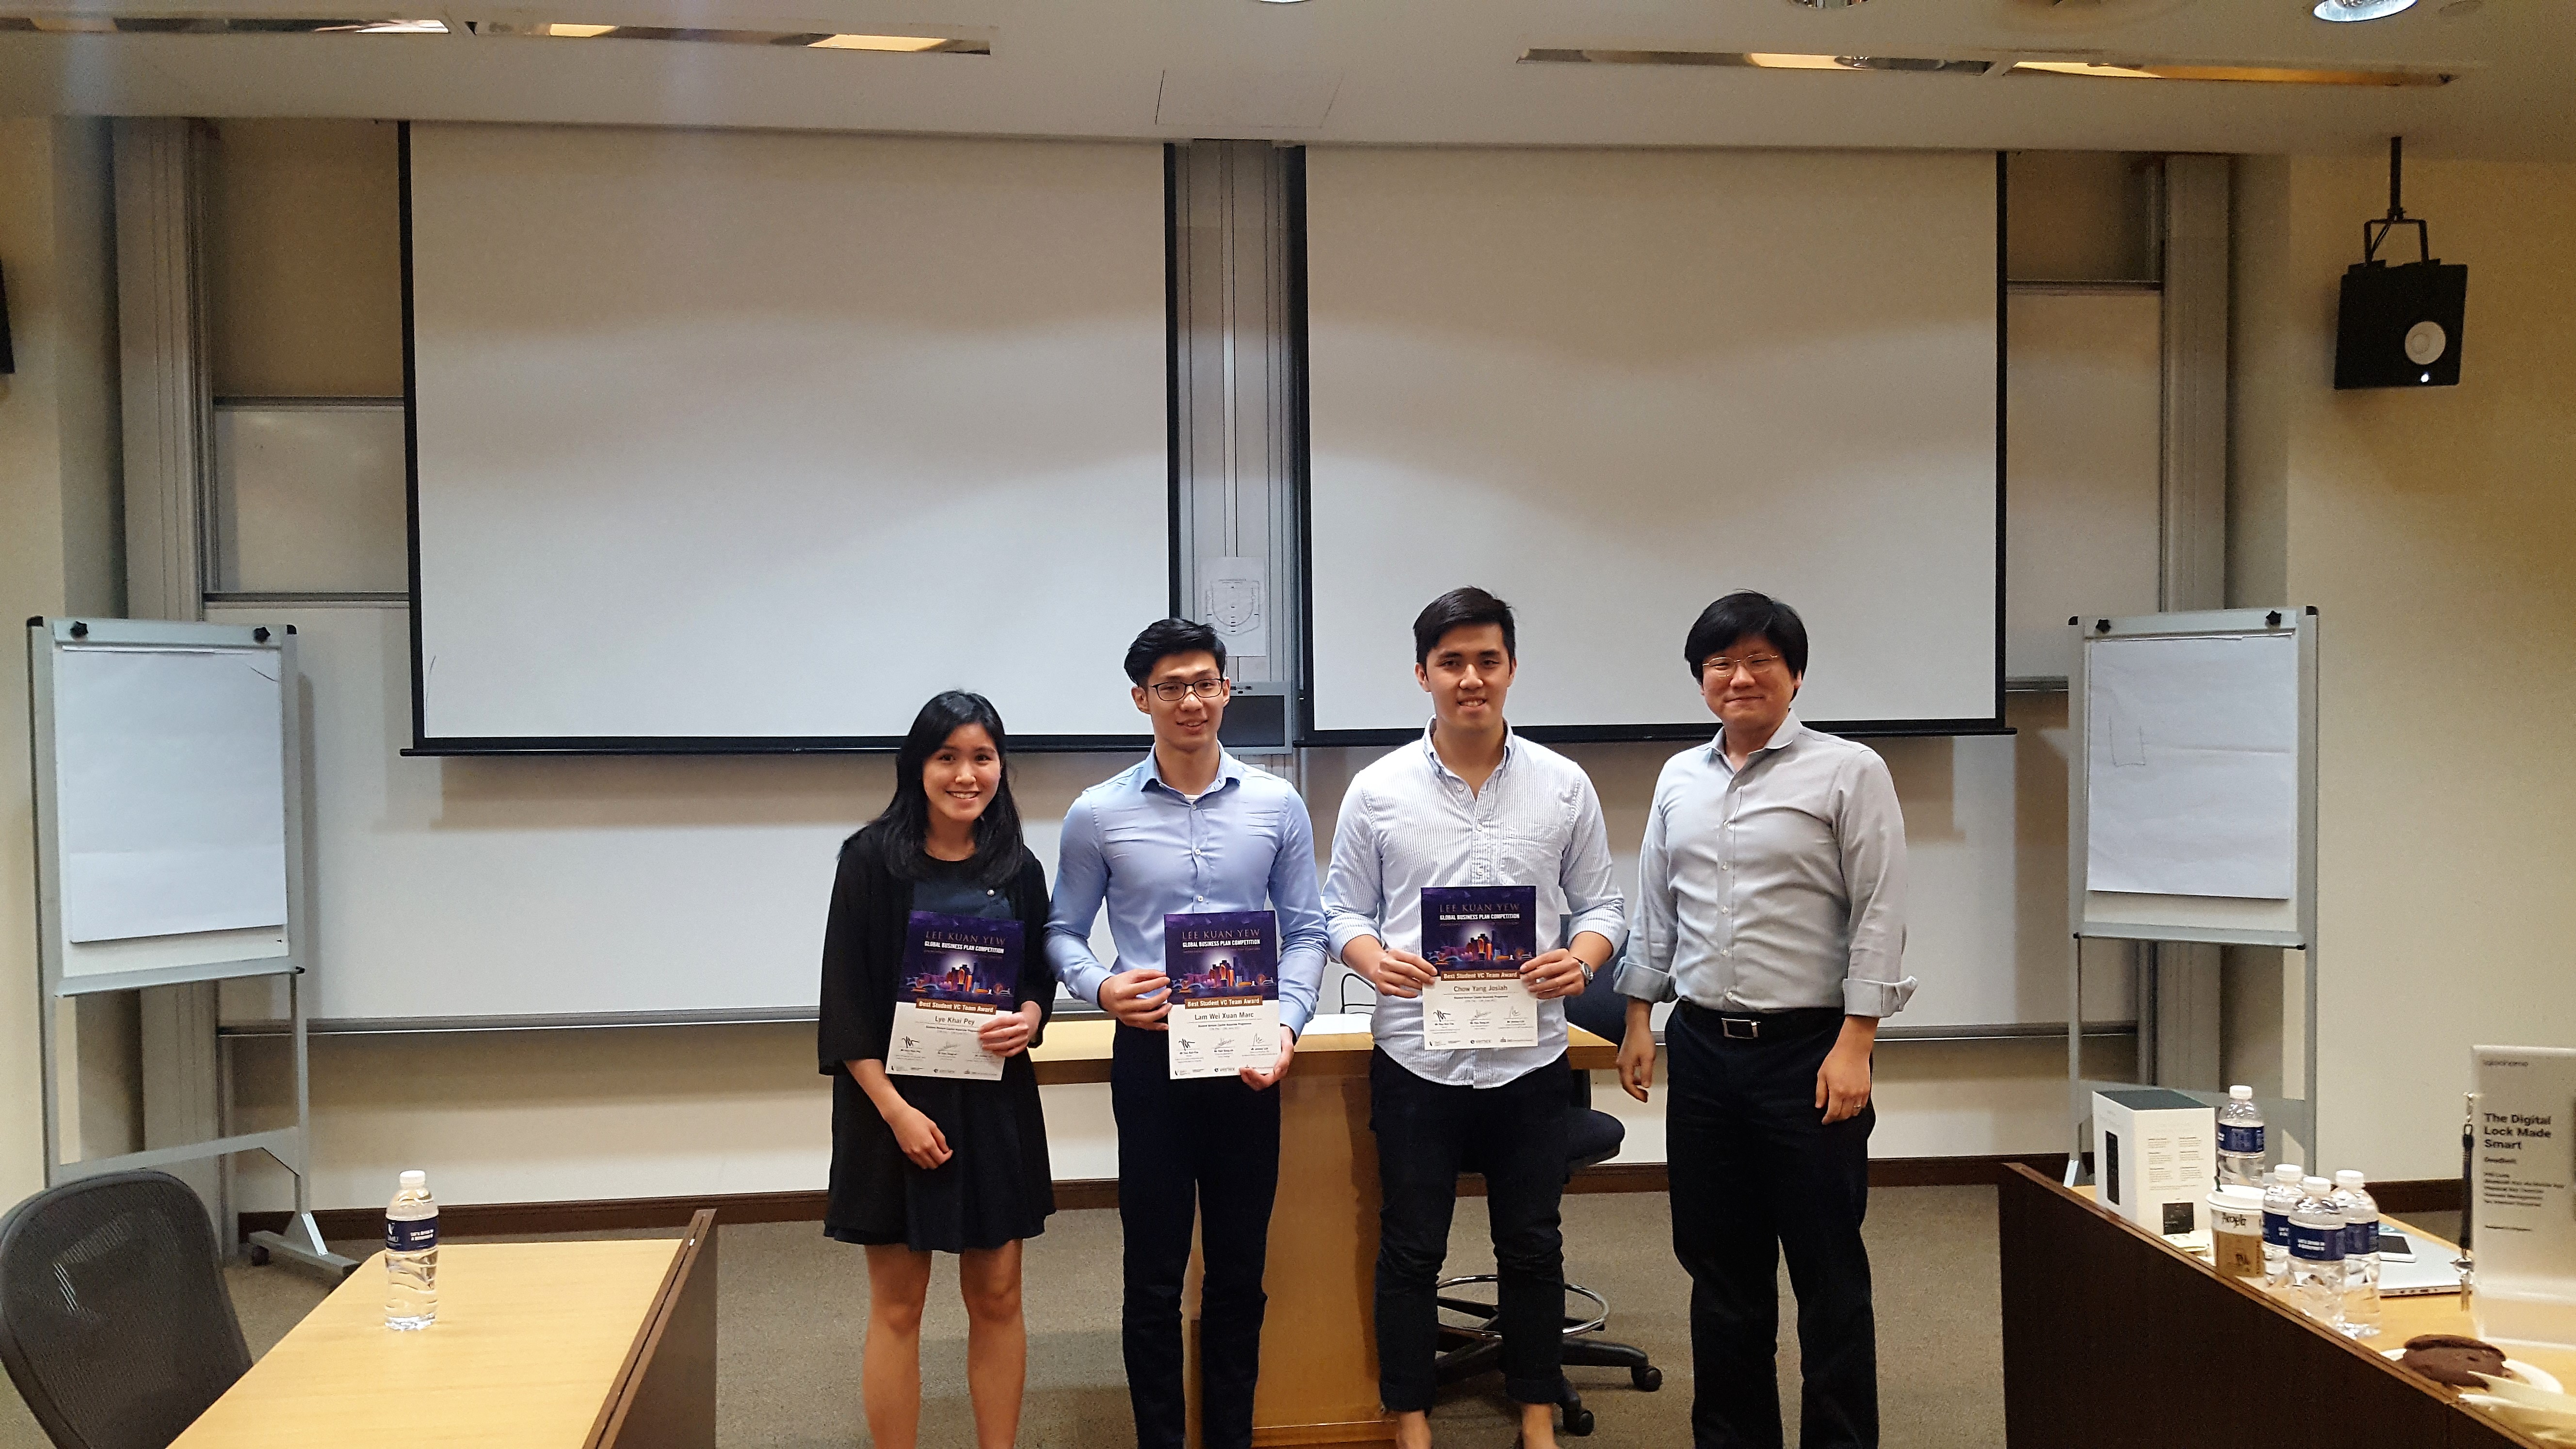 Team 1 awarded BstudentVC, LKYGBPC, 2017, Best Student Venture Capital Team Awardest Student Venture Capital Team Award